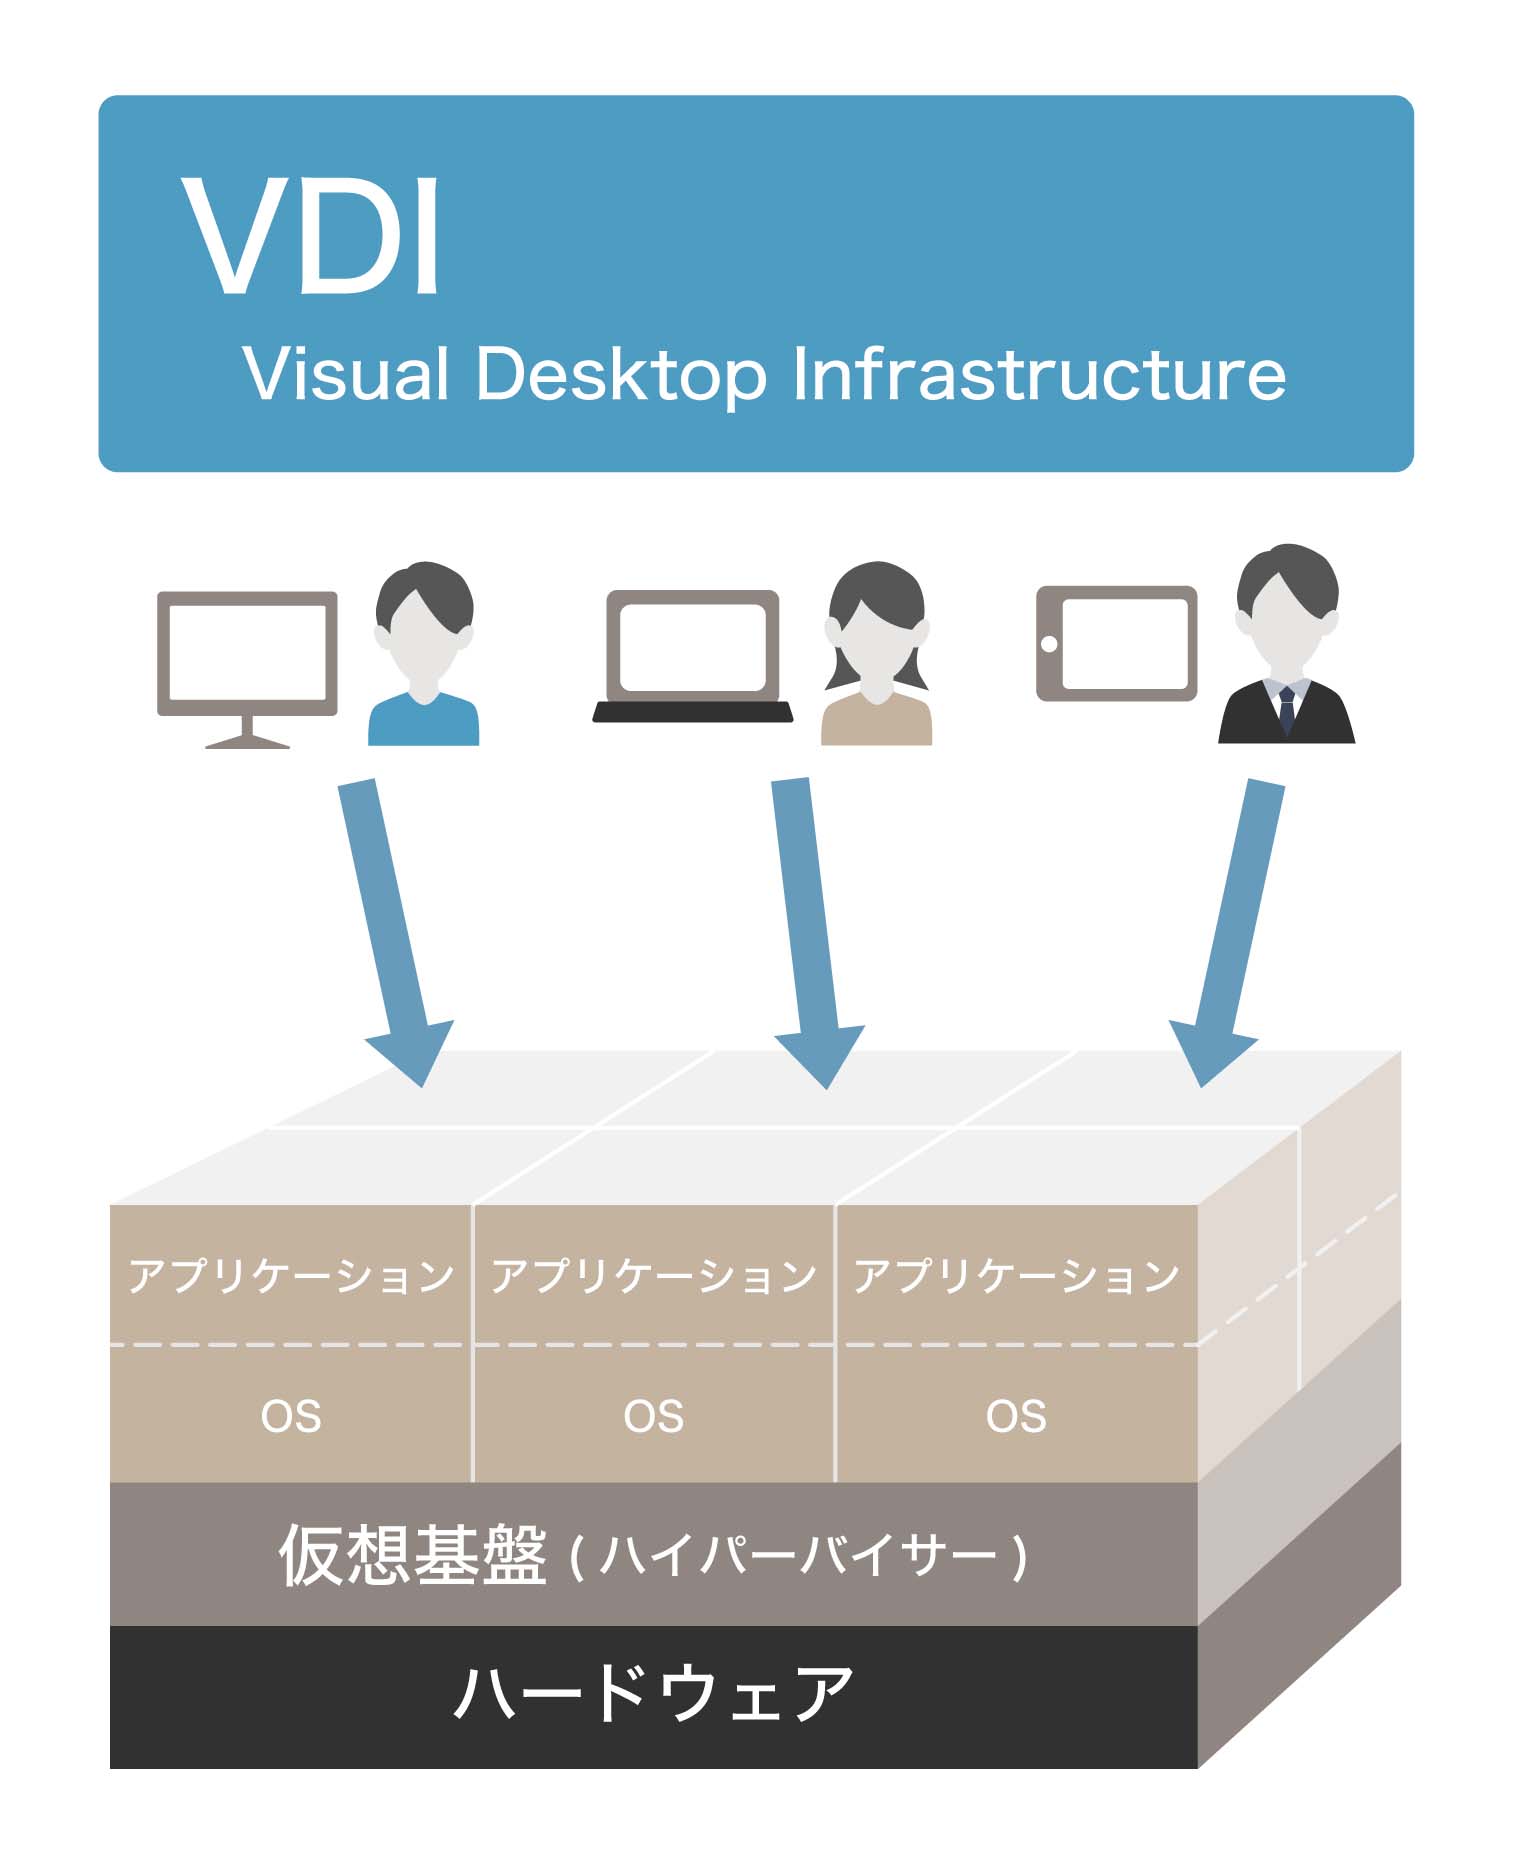 VDI（仮想デスクトップ）とは？その概要やDaaSとの違いをわかりやすく解説